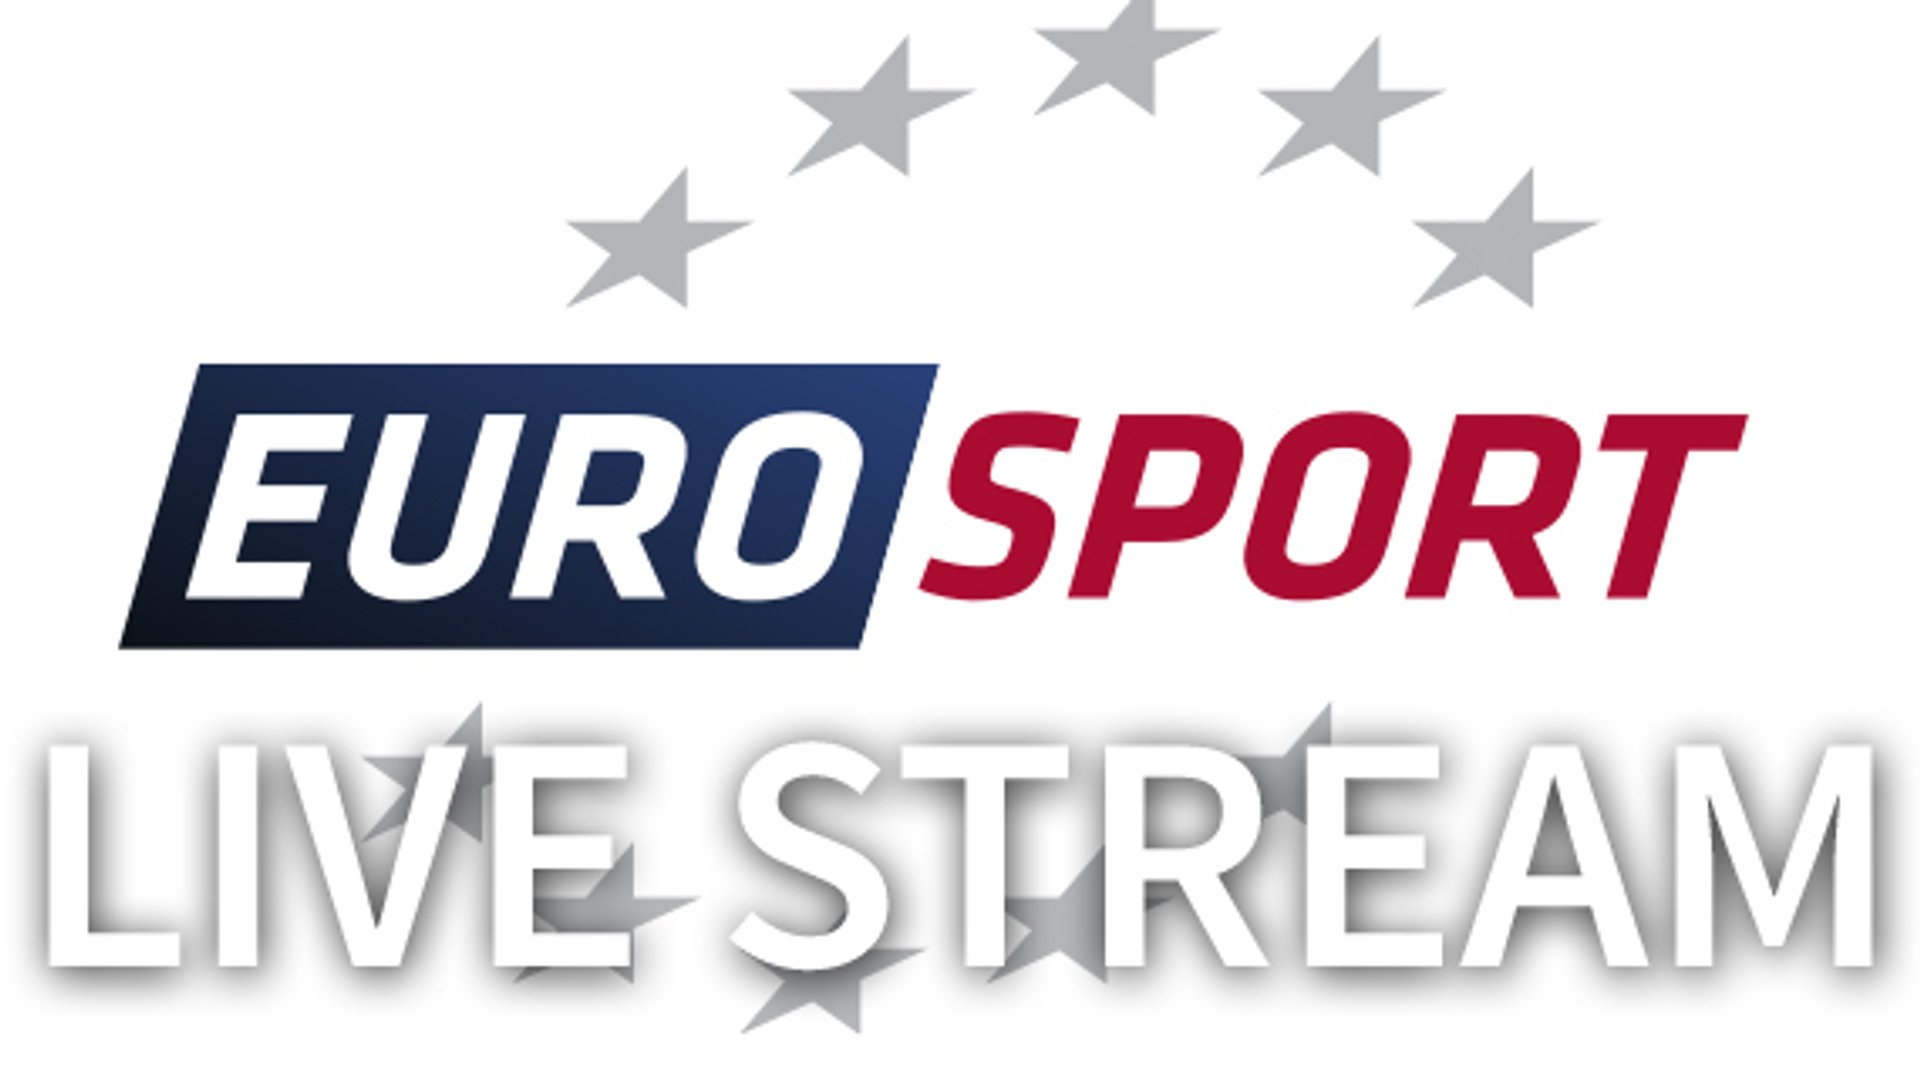 eurosport live stream kostenlos ohne anmeldung